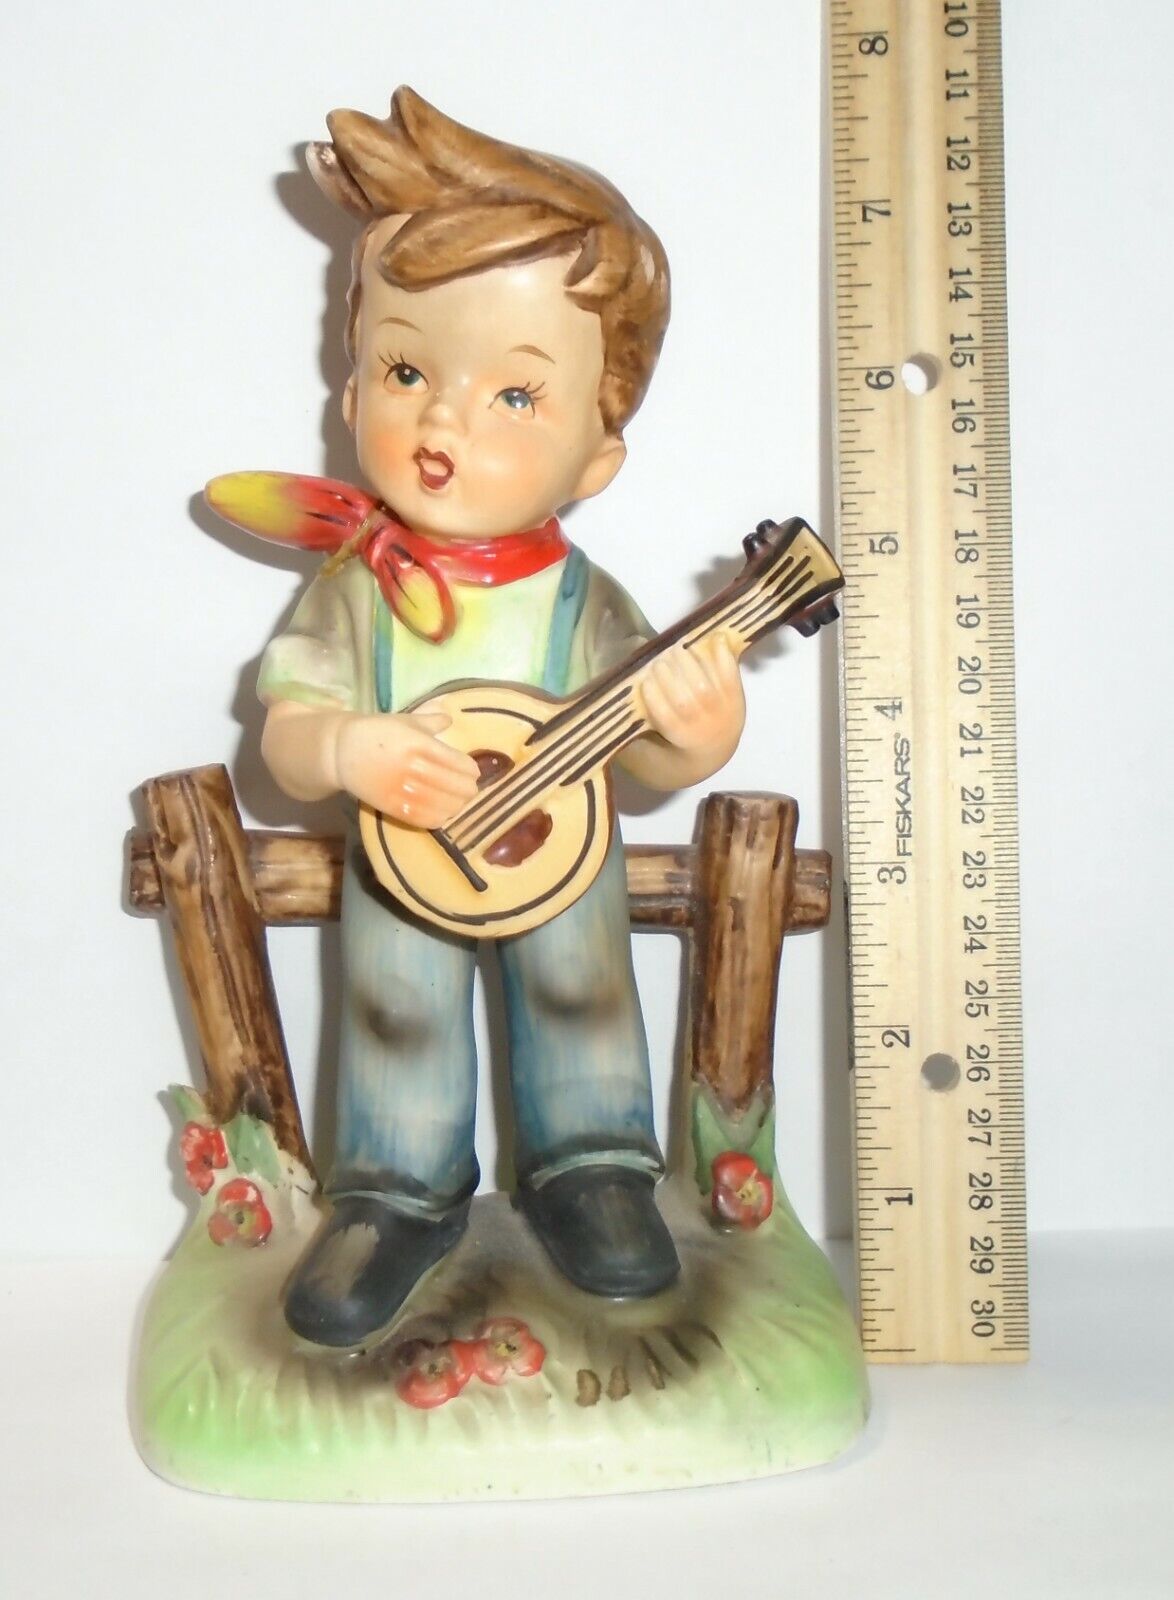 Antique Vintage Porcelain ceramic Boy Figurine made in Japan M6501